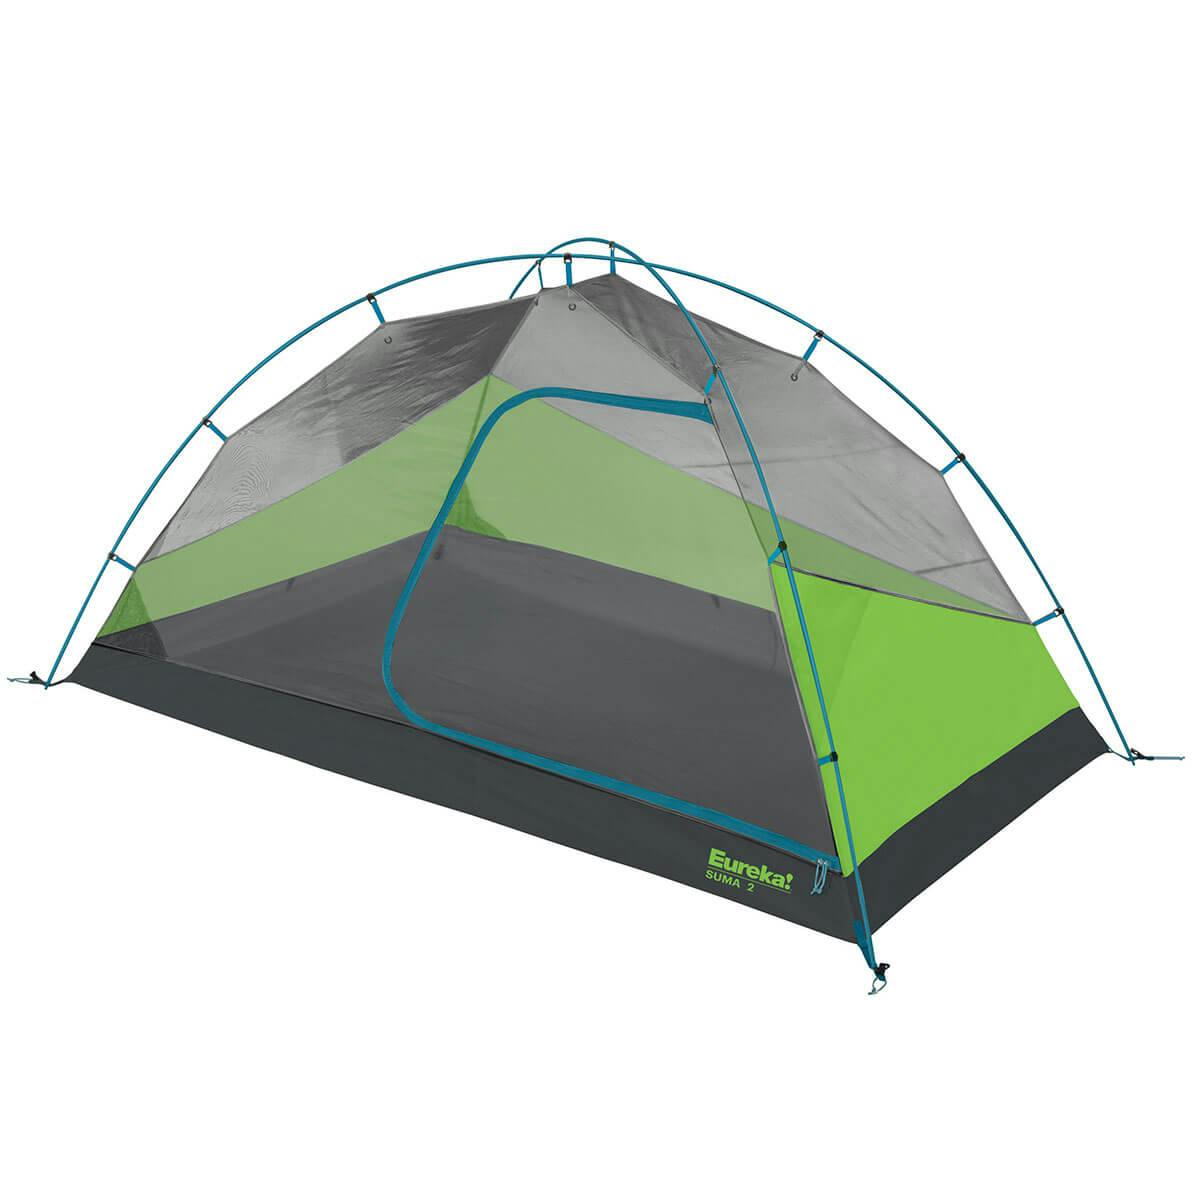 Eureka Suma Tent